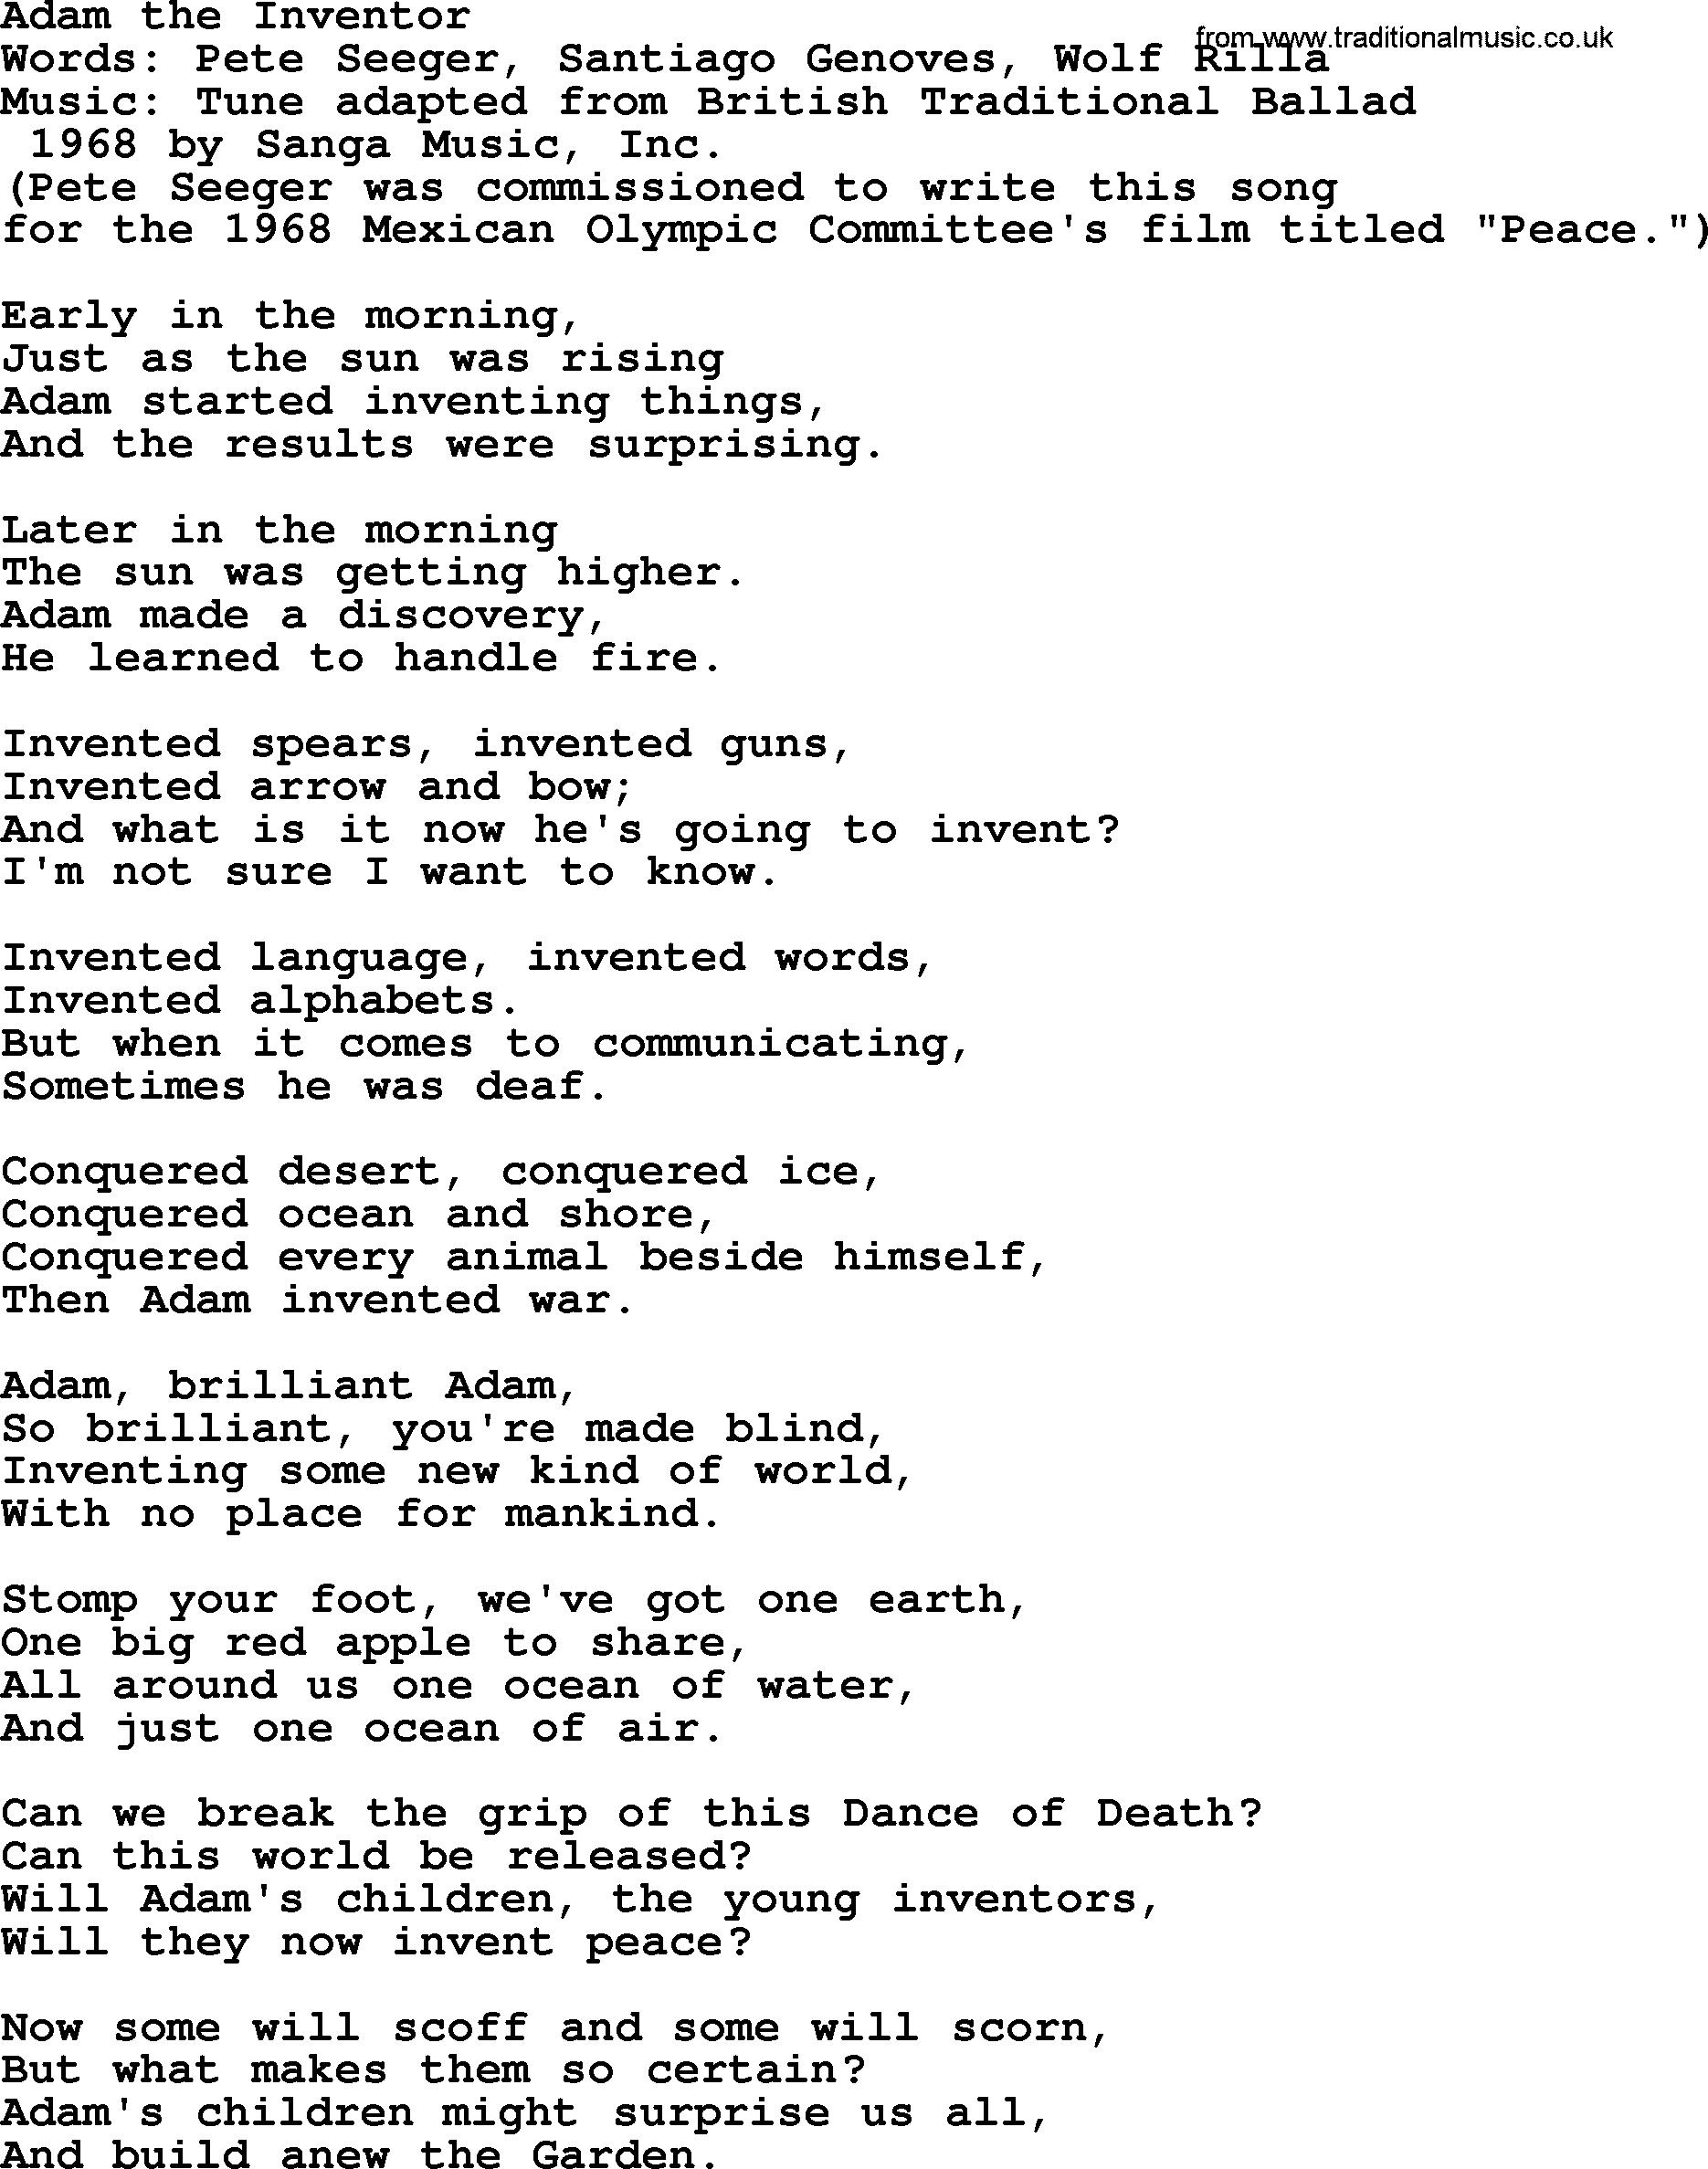 Pete Seeger song Adam the Inventor-Pete-Seeger.txt lyrics